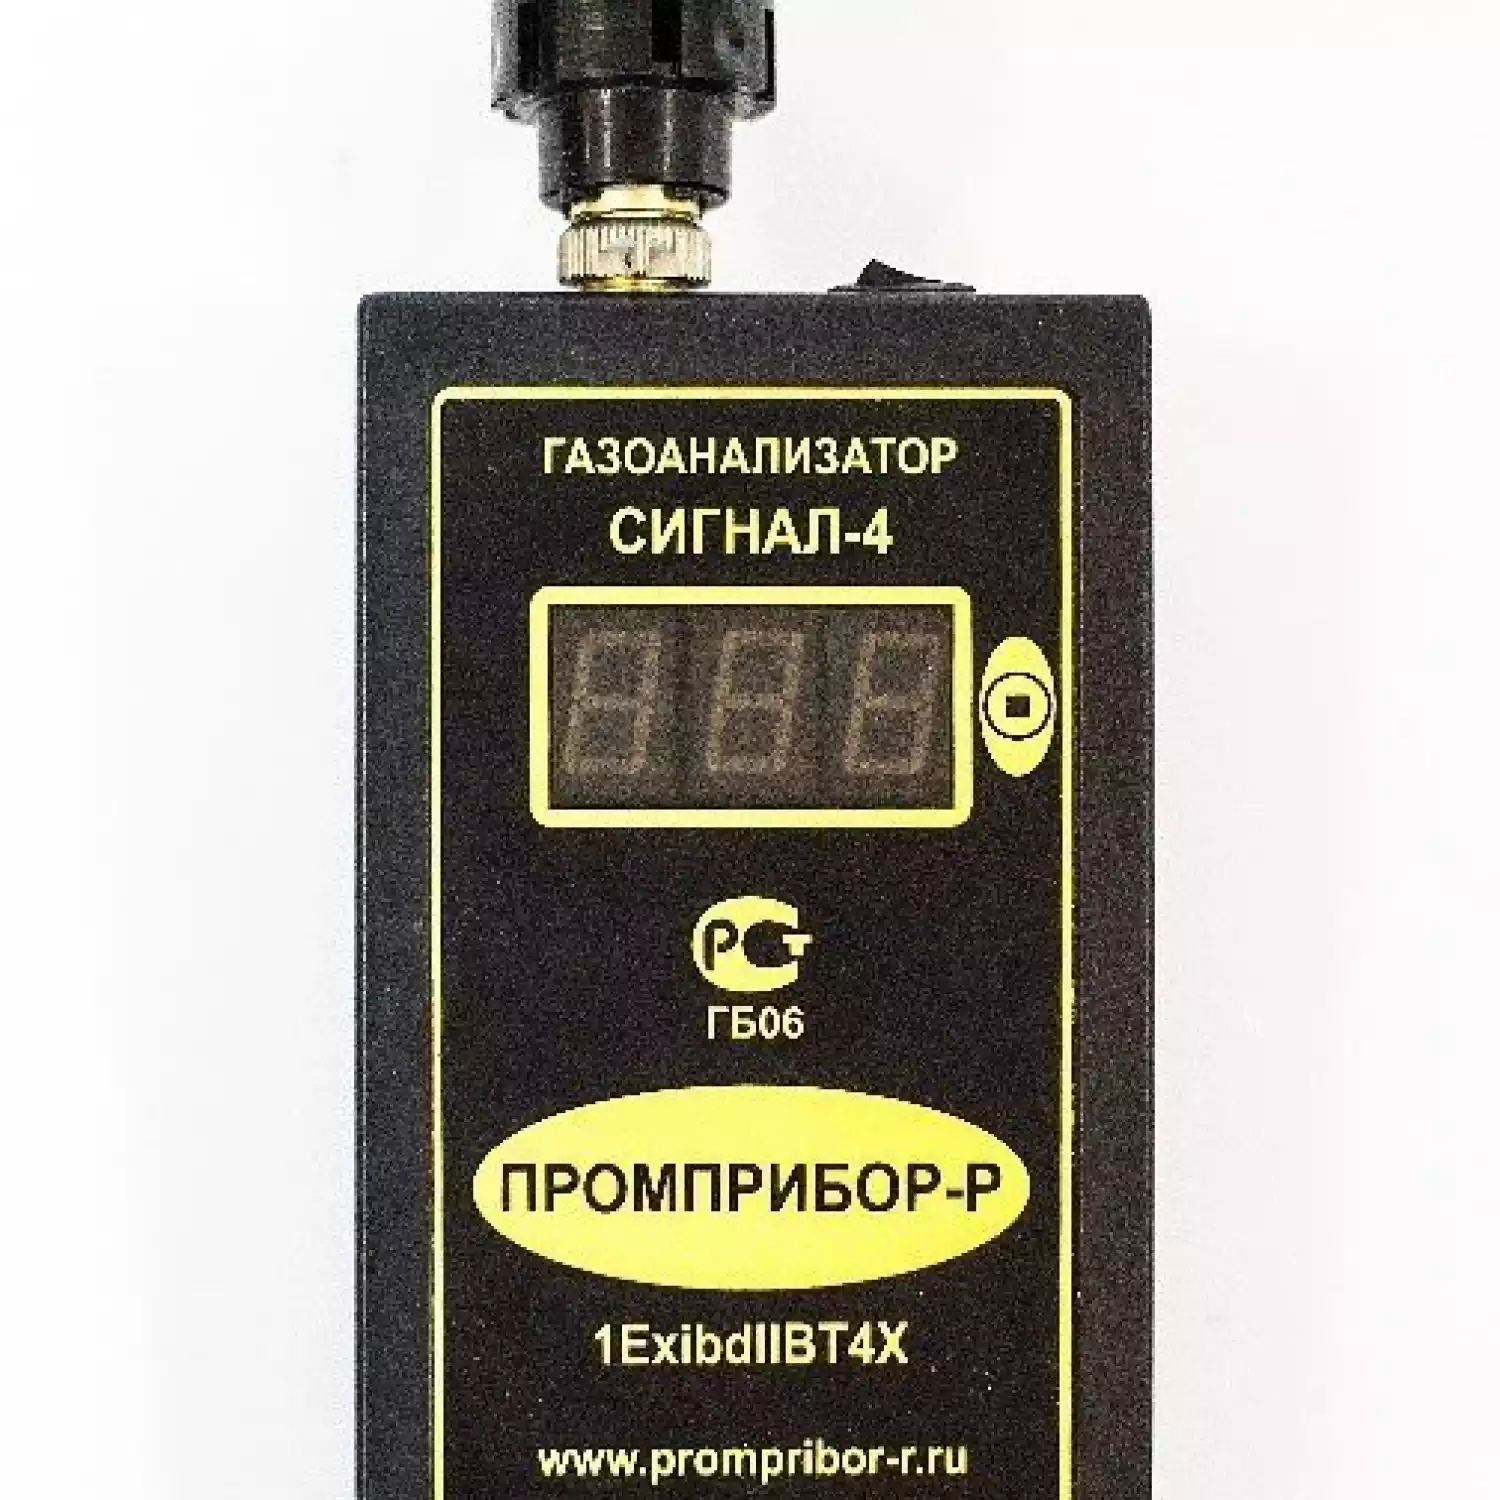 Персональный переносной газоанализатор бензина Сигнал-4 (Термокаталитический) - 1